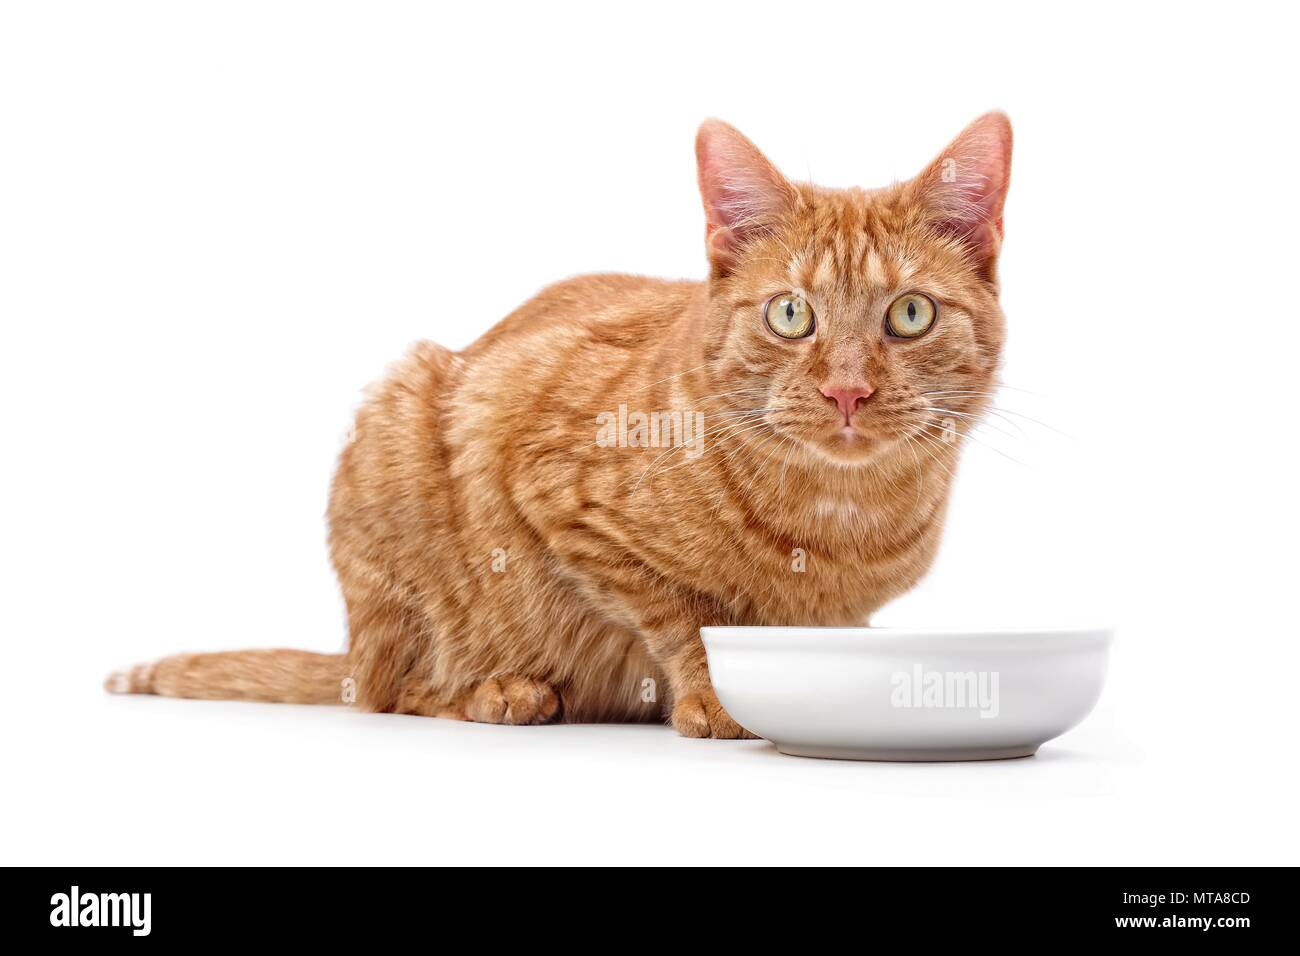 Le gingembre cat assis autour d'un bol de nourriture et à la recherche de l'appareil photo - isolé sur blanc. Banque D'Images